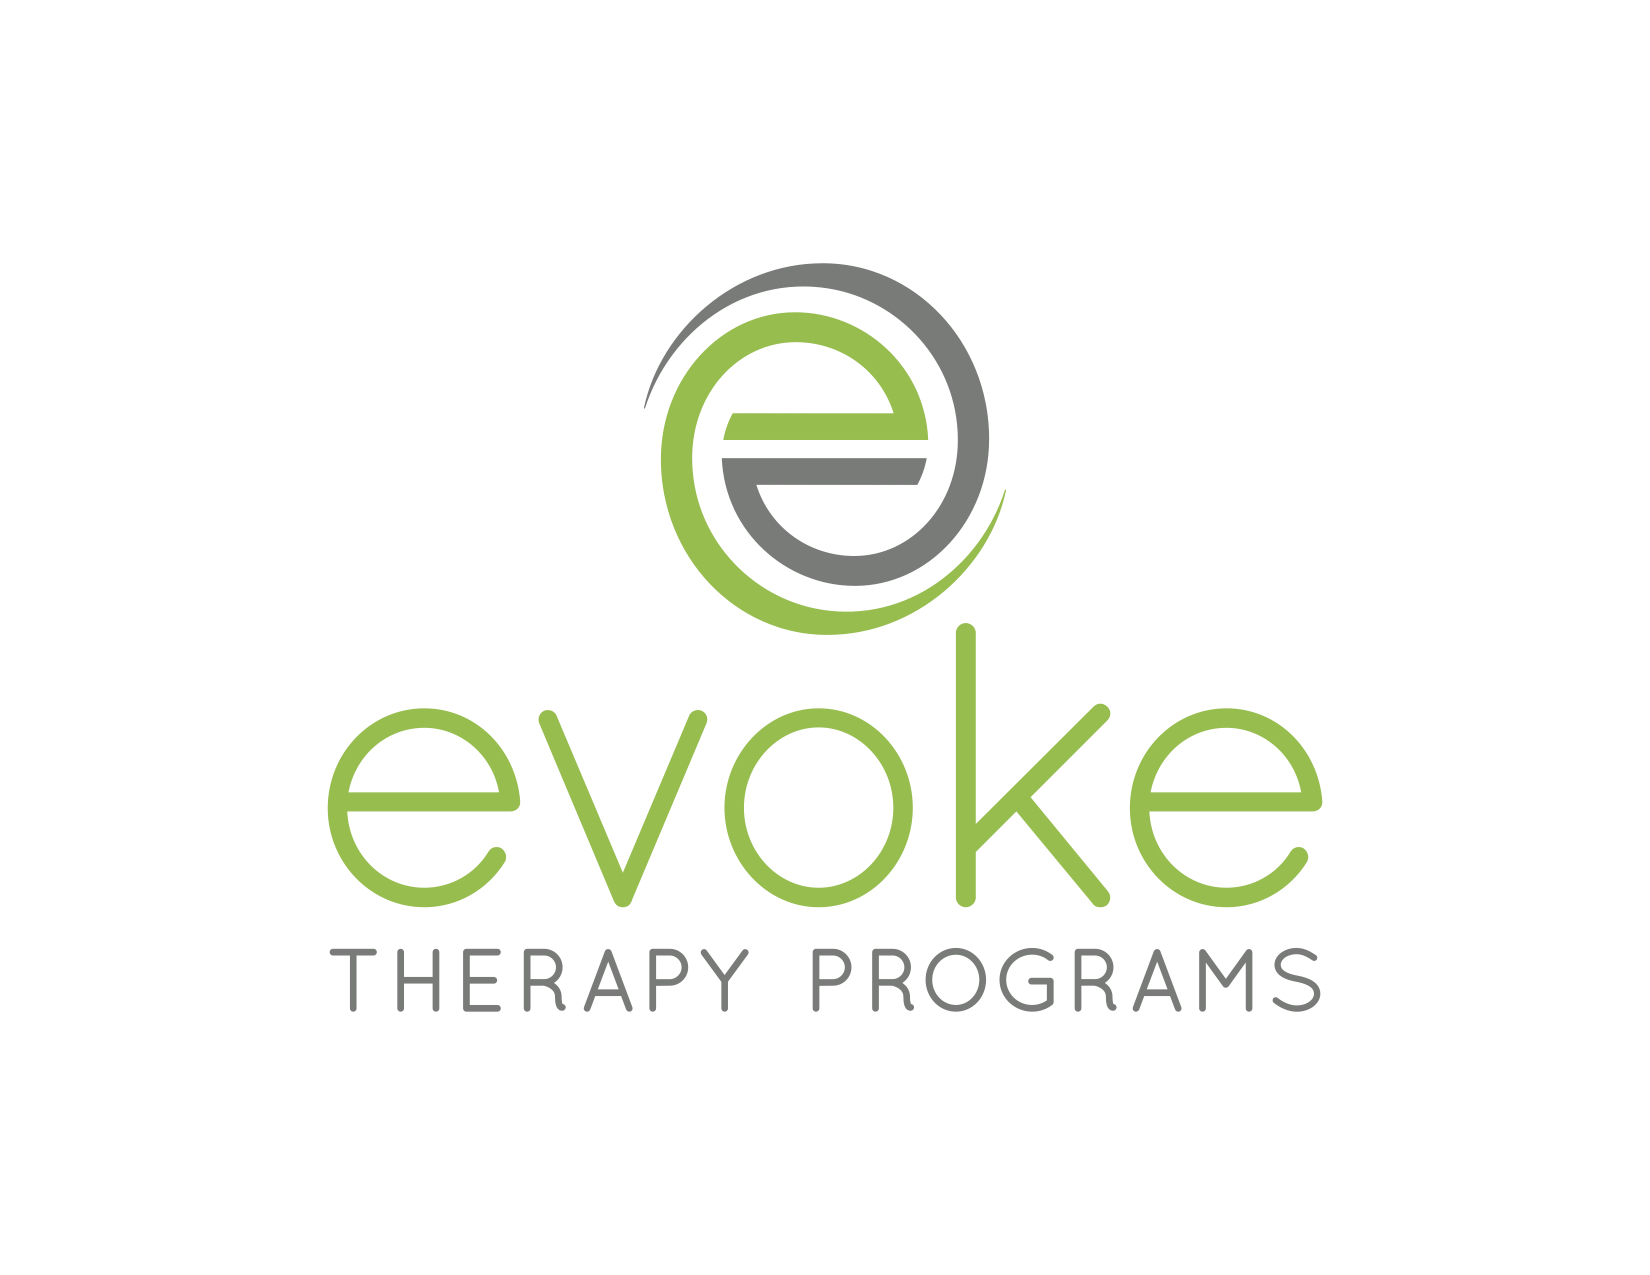 Evoke Therapy Programs Logo